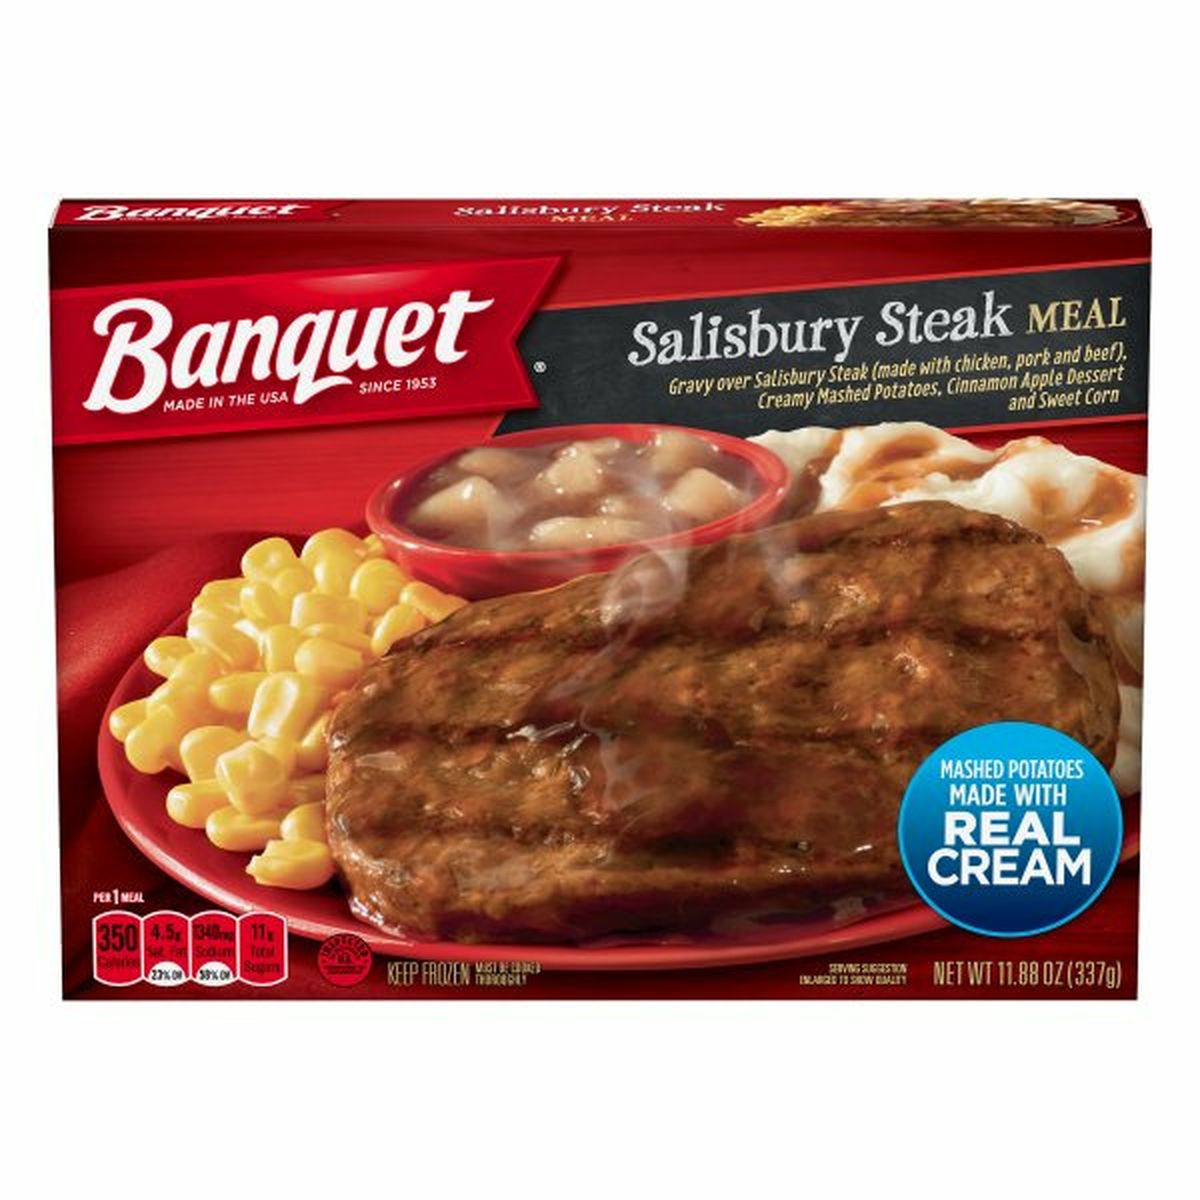 Calories in Banquet Salisbury Steak Meal